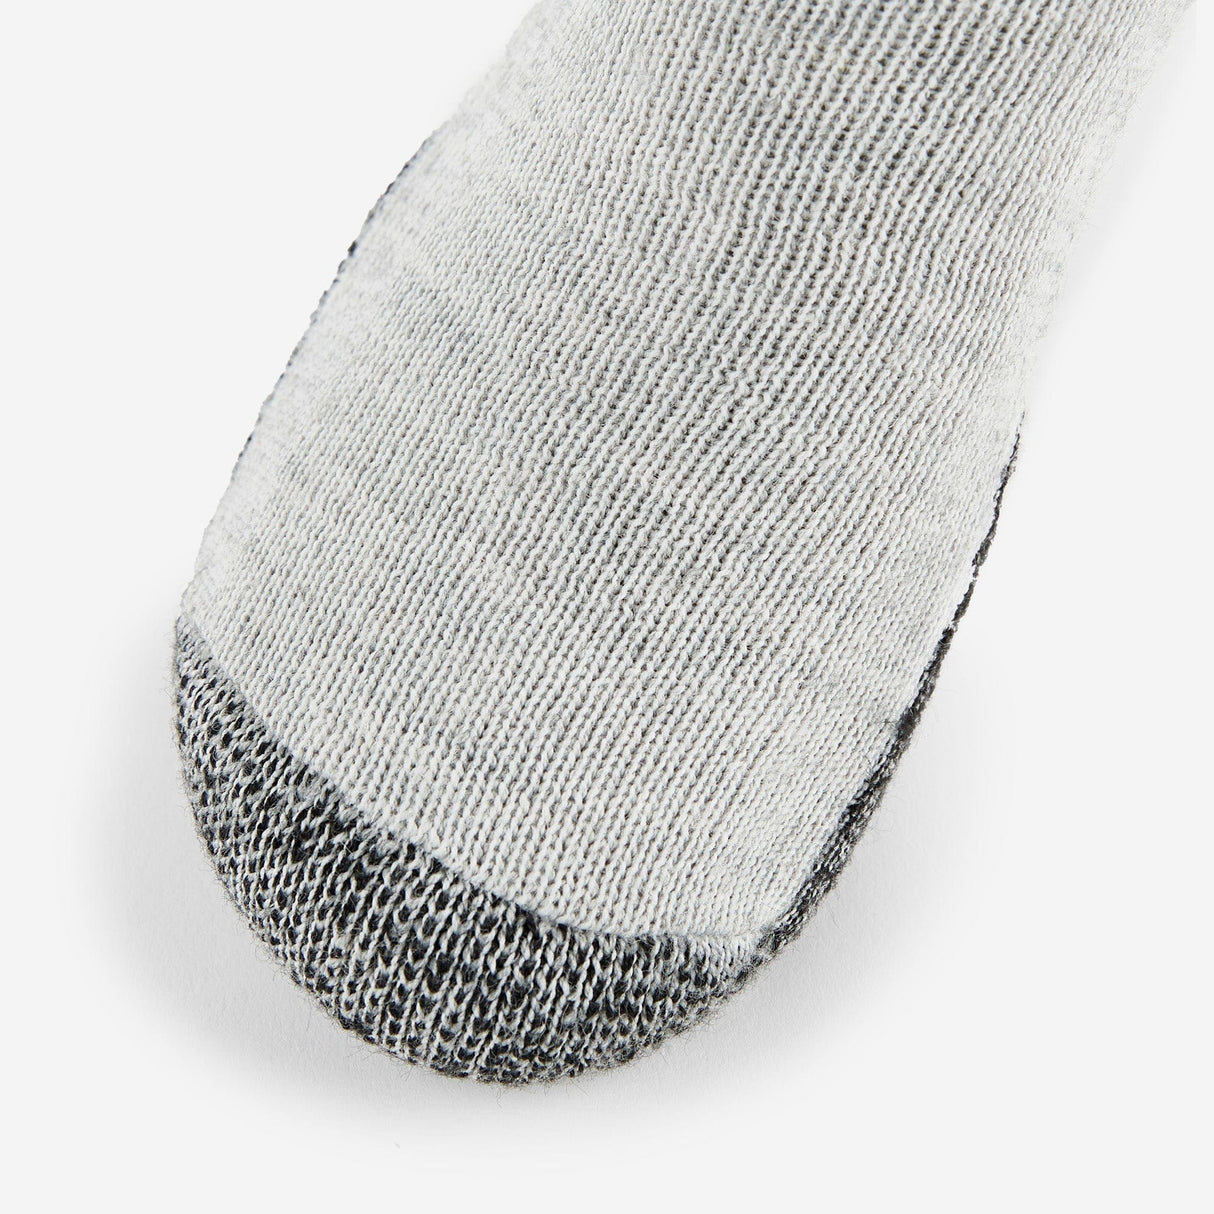 Thorlo Maximum Cushion Warm Hiking Crew Socks  -  Medium / Black/Grey / Single Pair